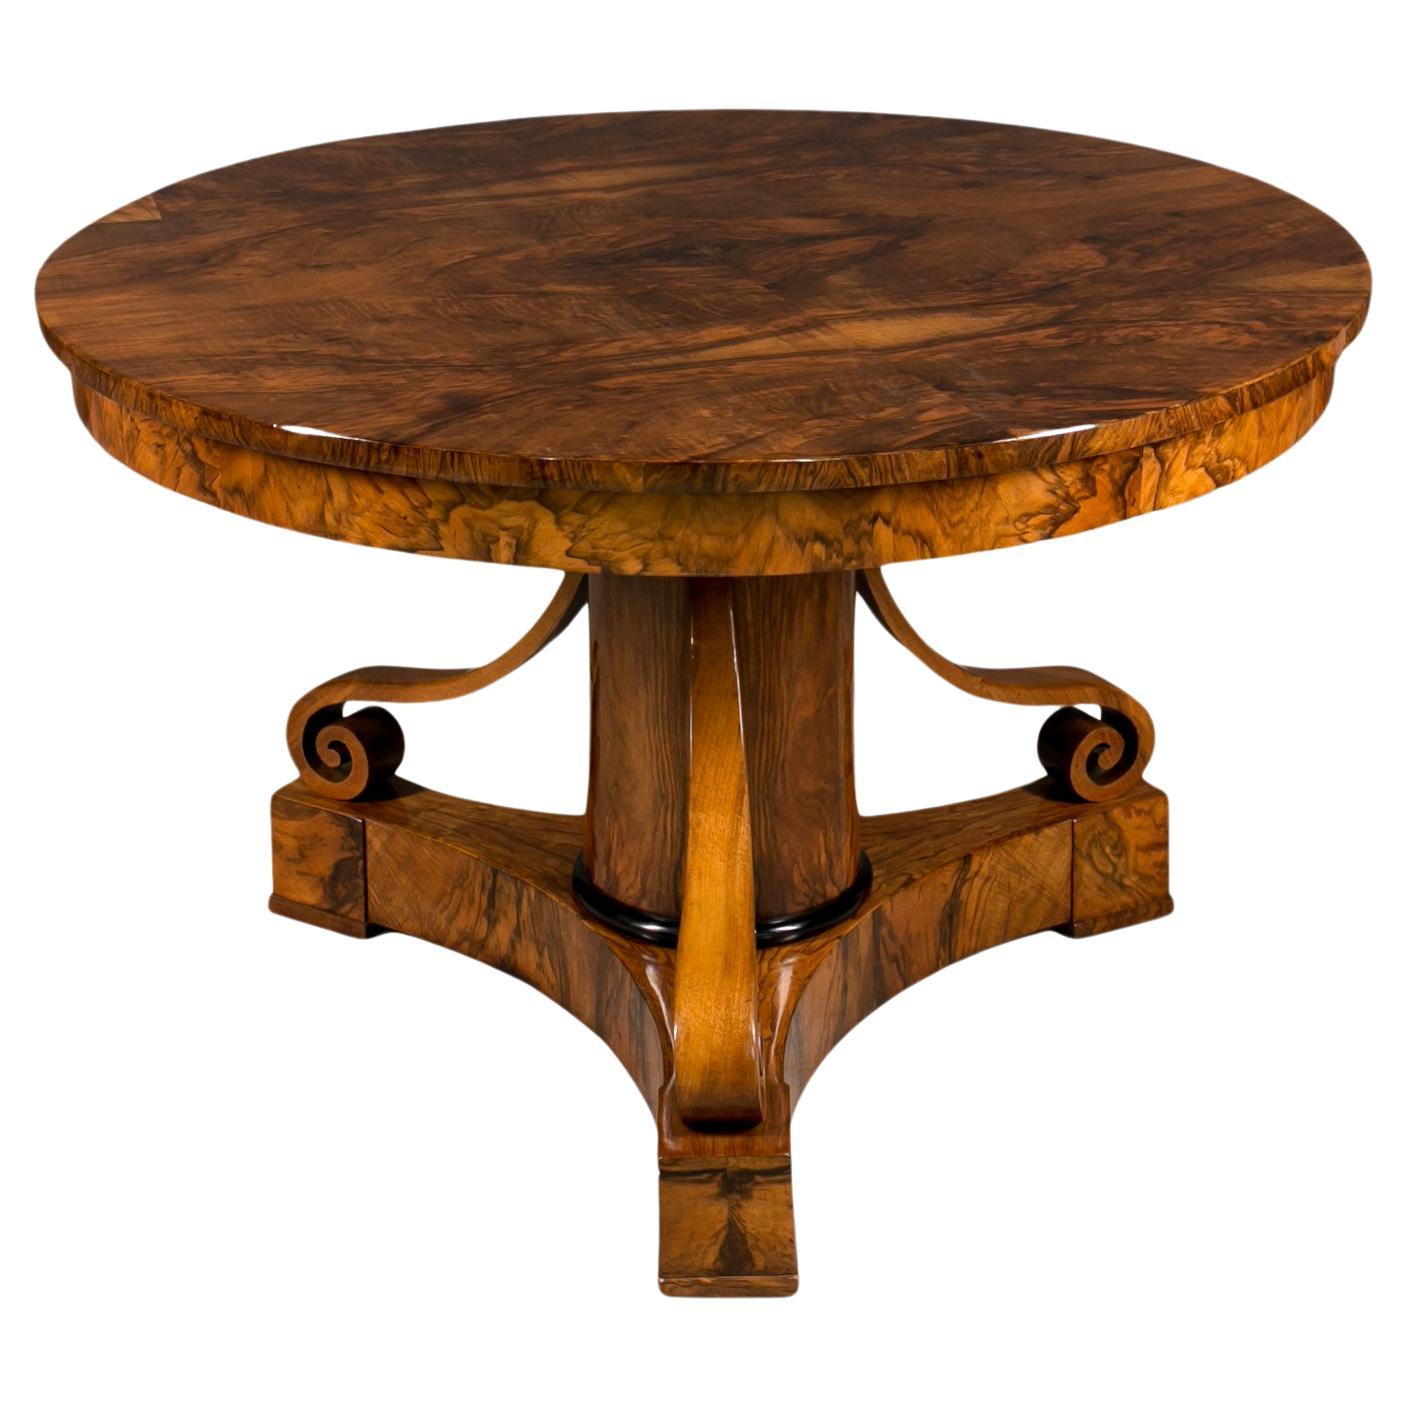 Biedermeier Round Table in Exceptional Walnut Veneer, Germany, 19th Century